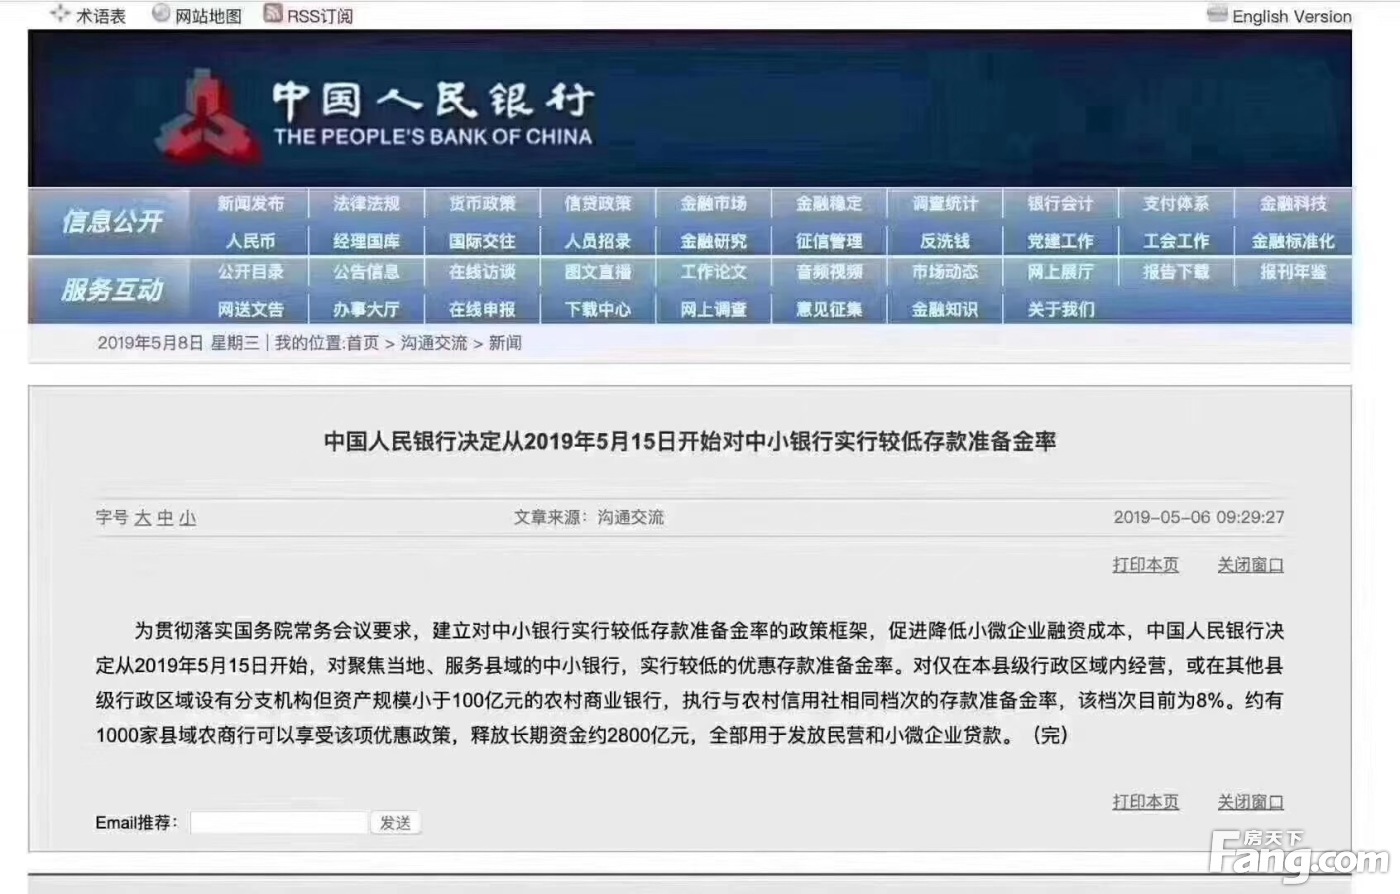 中国人民银行决定从2019年5月15日开始对中小银行实行较低存款准备金率